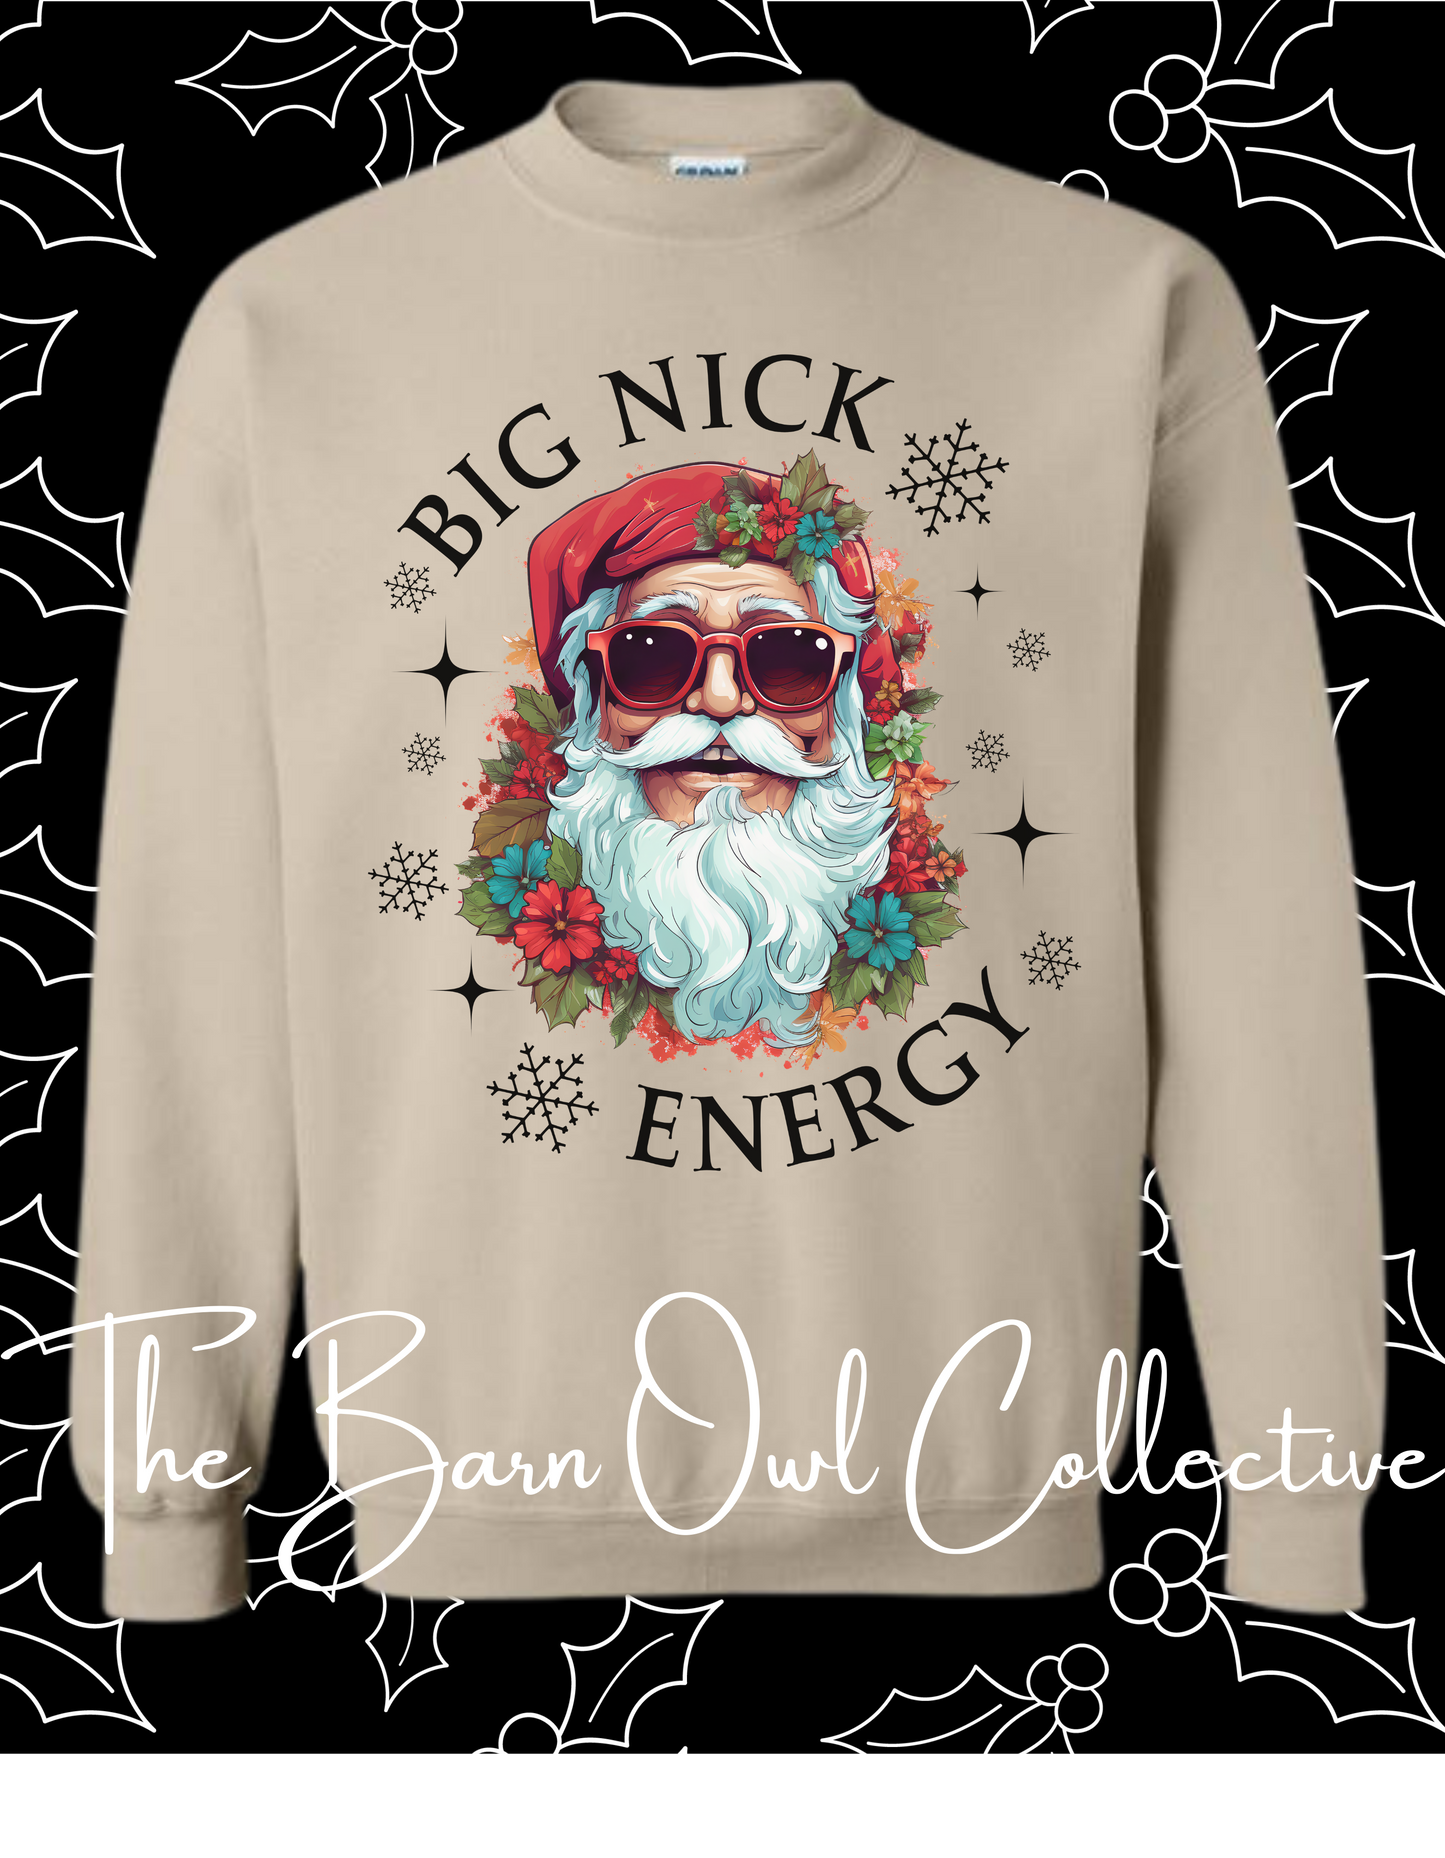 Big Nick Energy Crewneck Sweatshirt The Barn Owl Collective